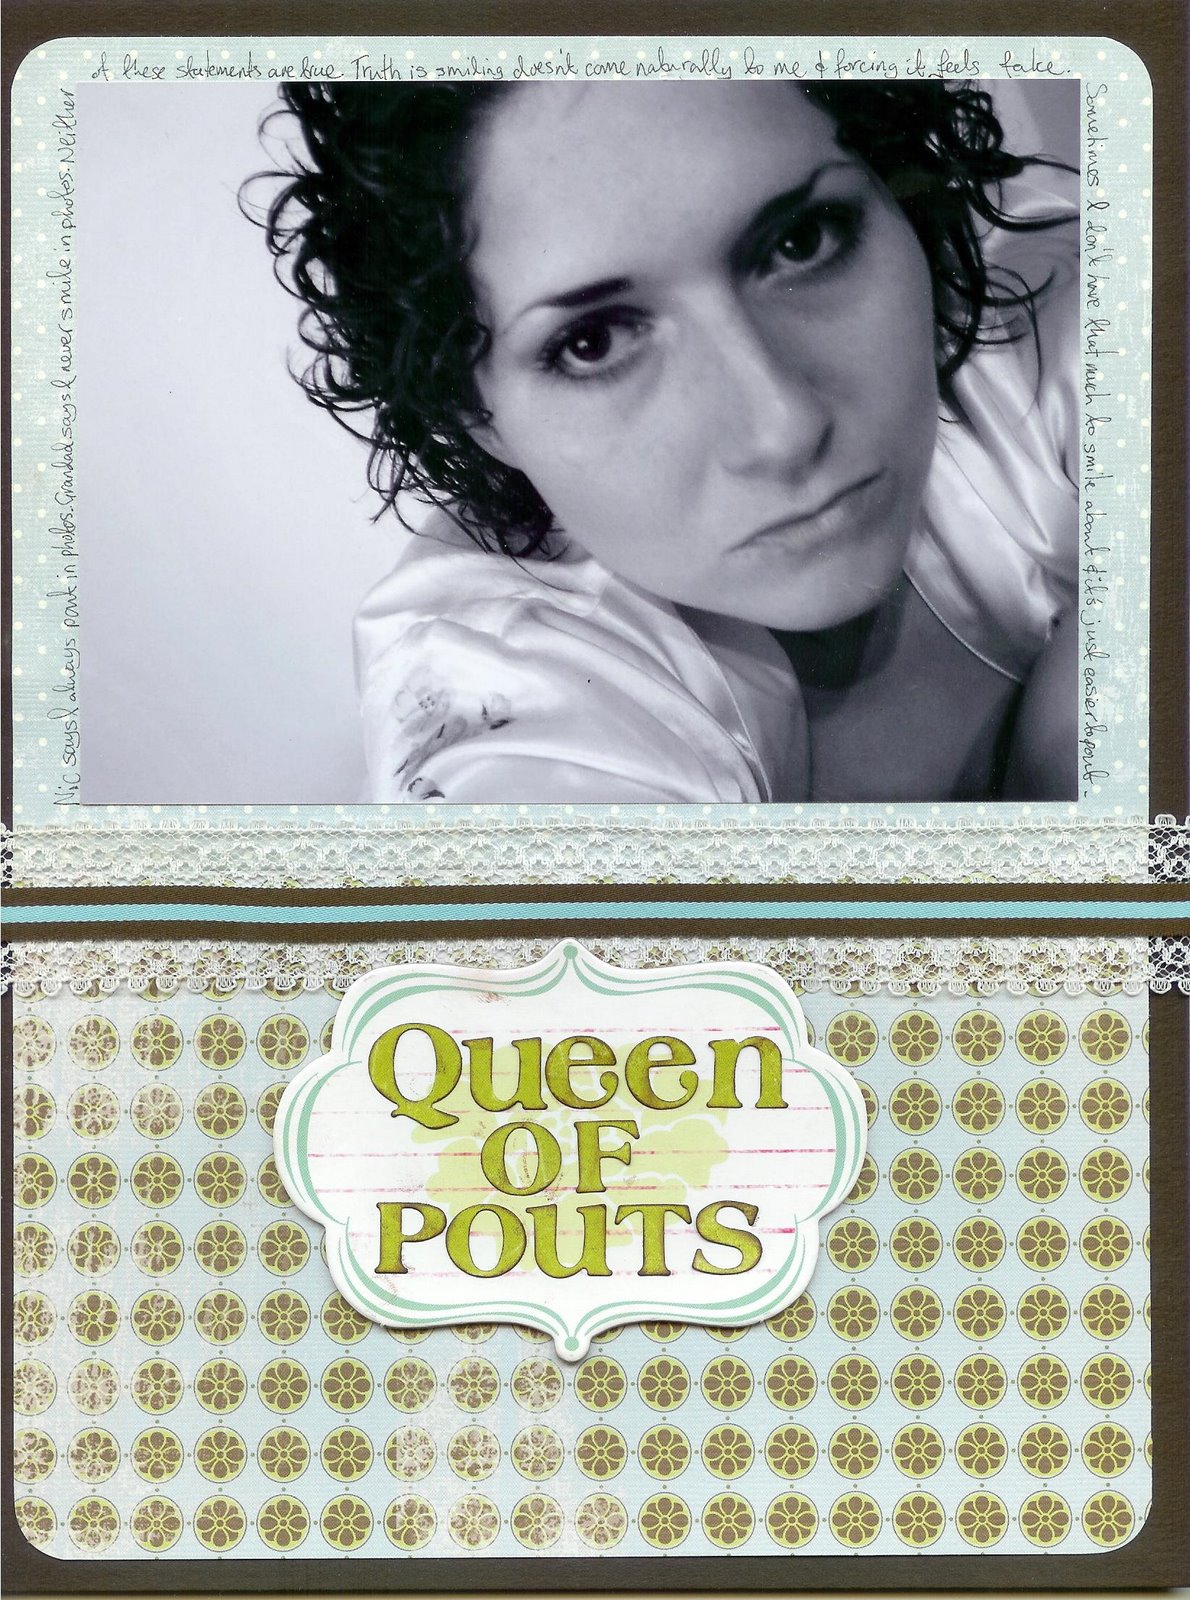 [Queen+of+pouts.JPG]